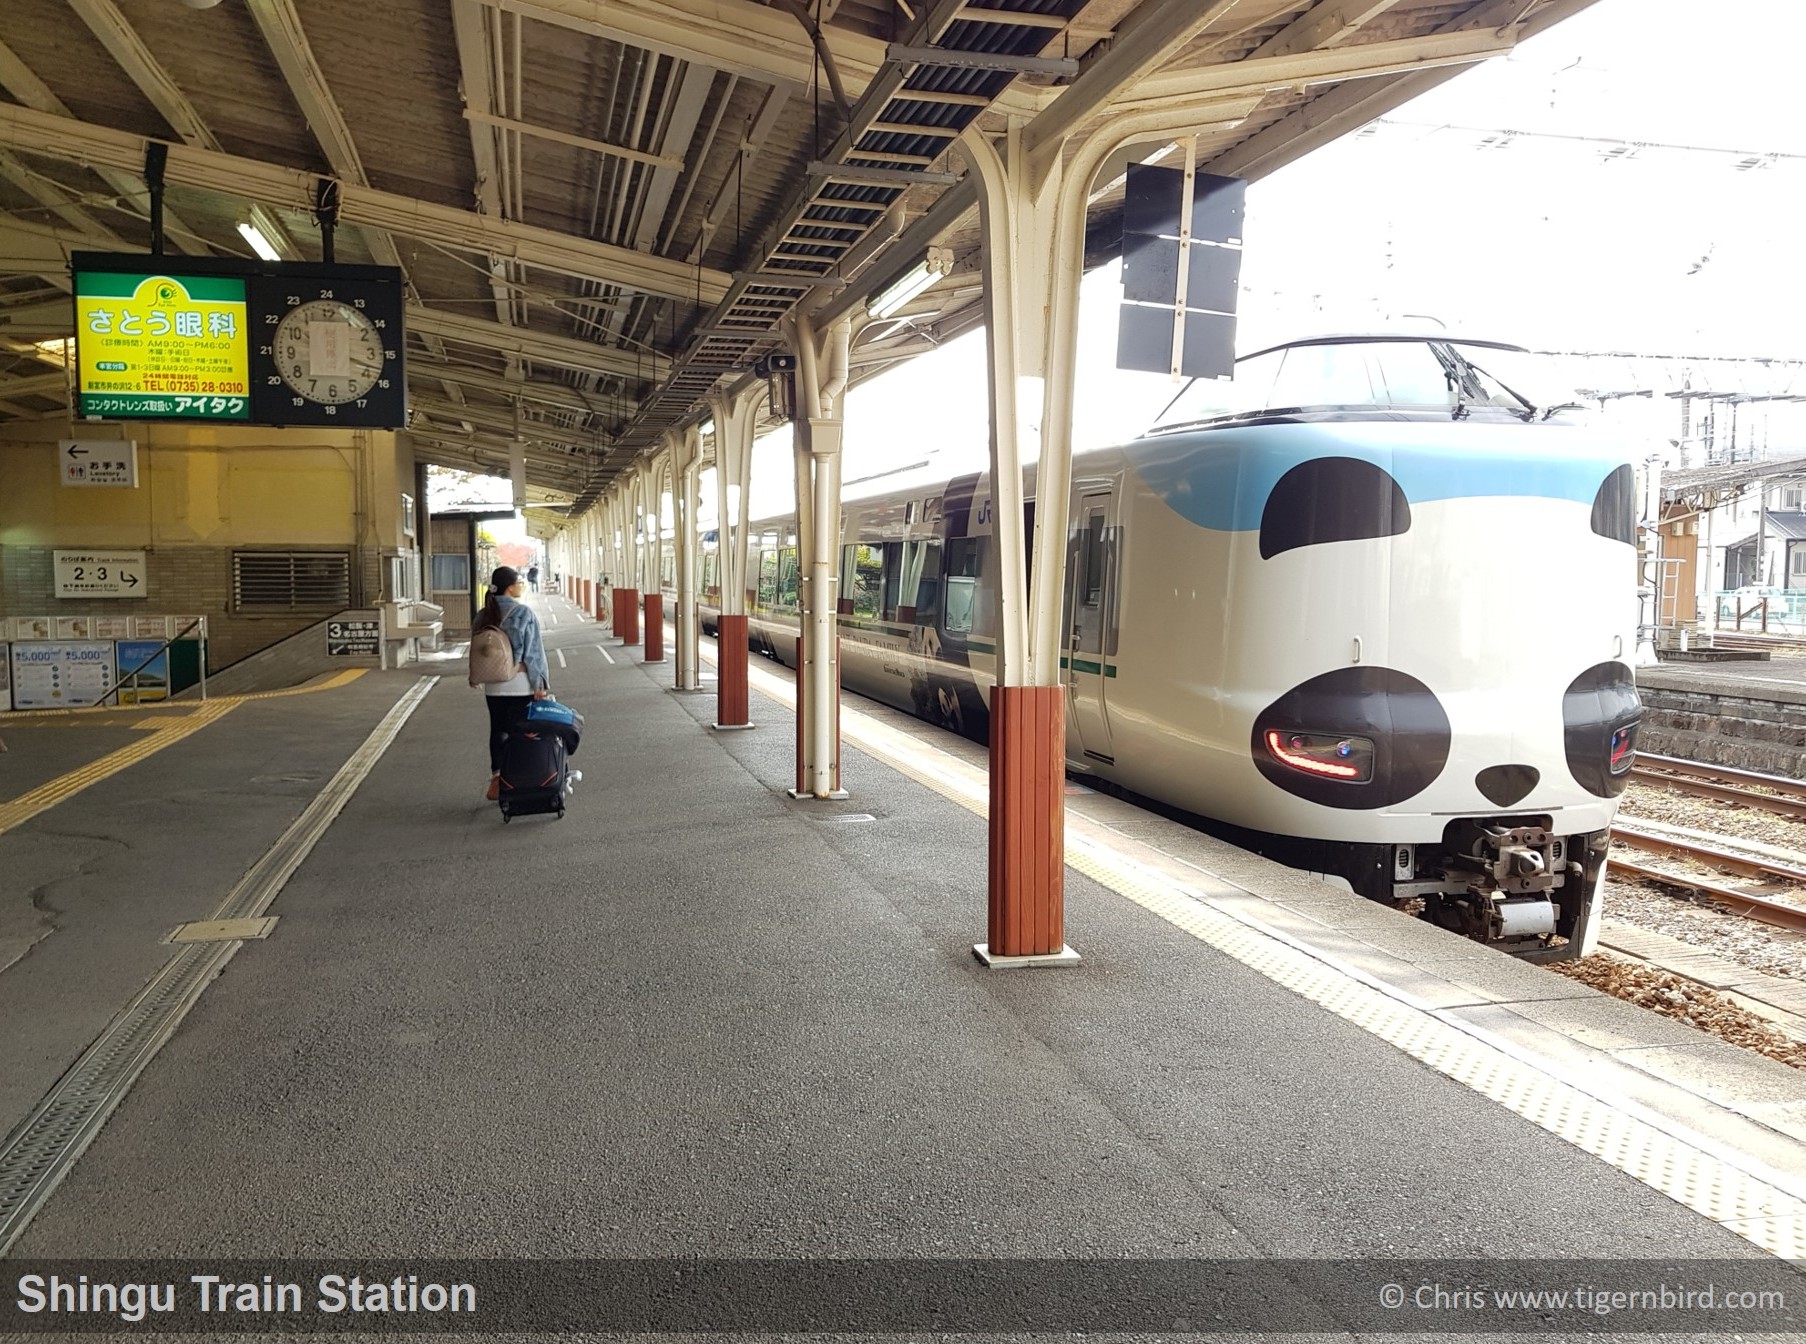 Panda express on JR Kansai railway in Shingu, Japan